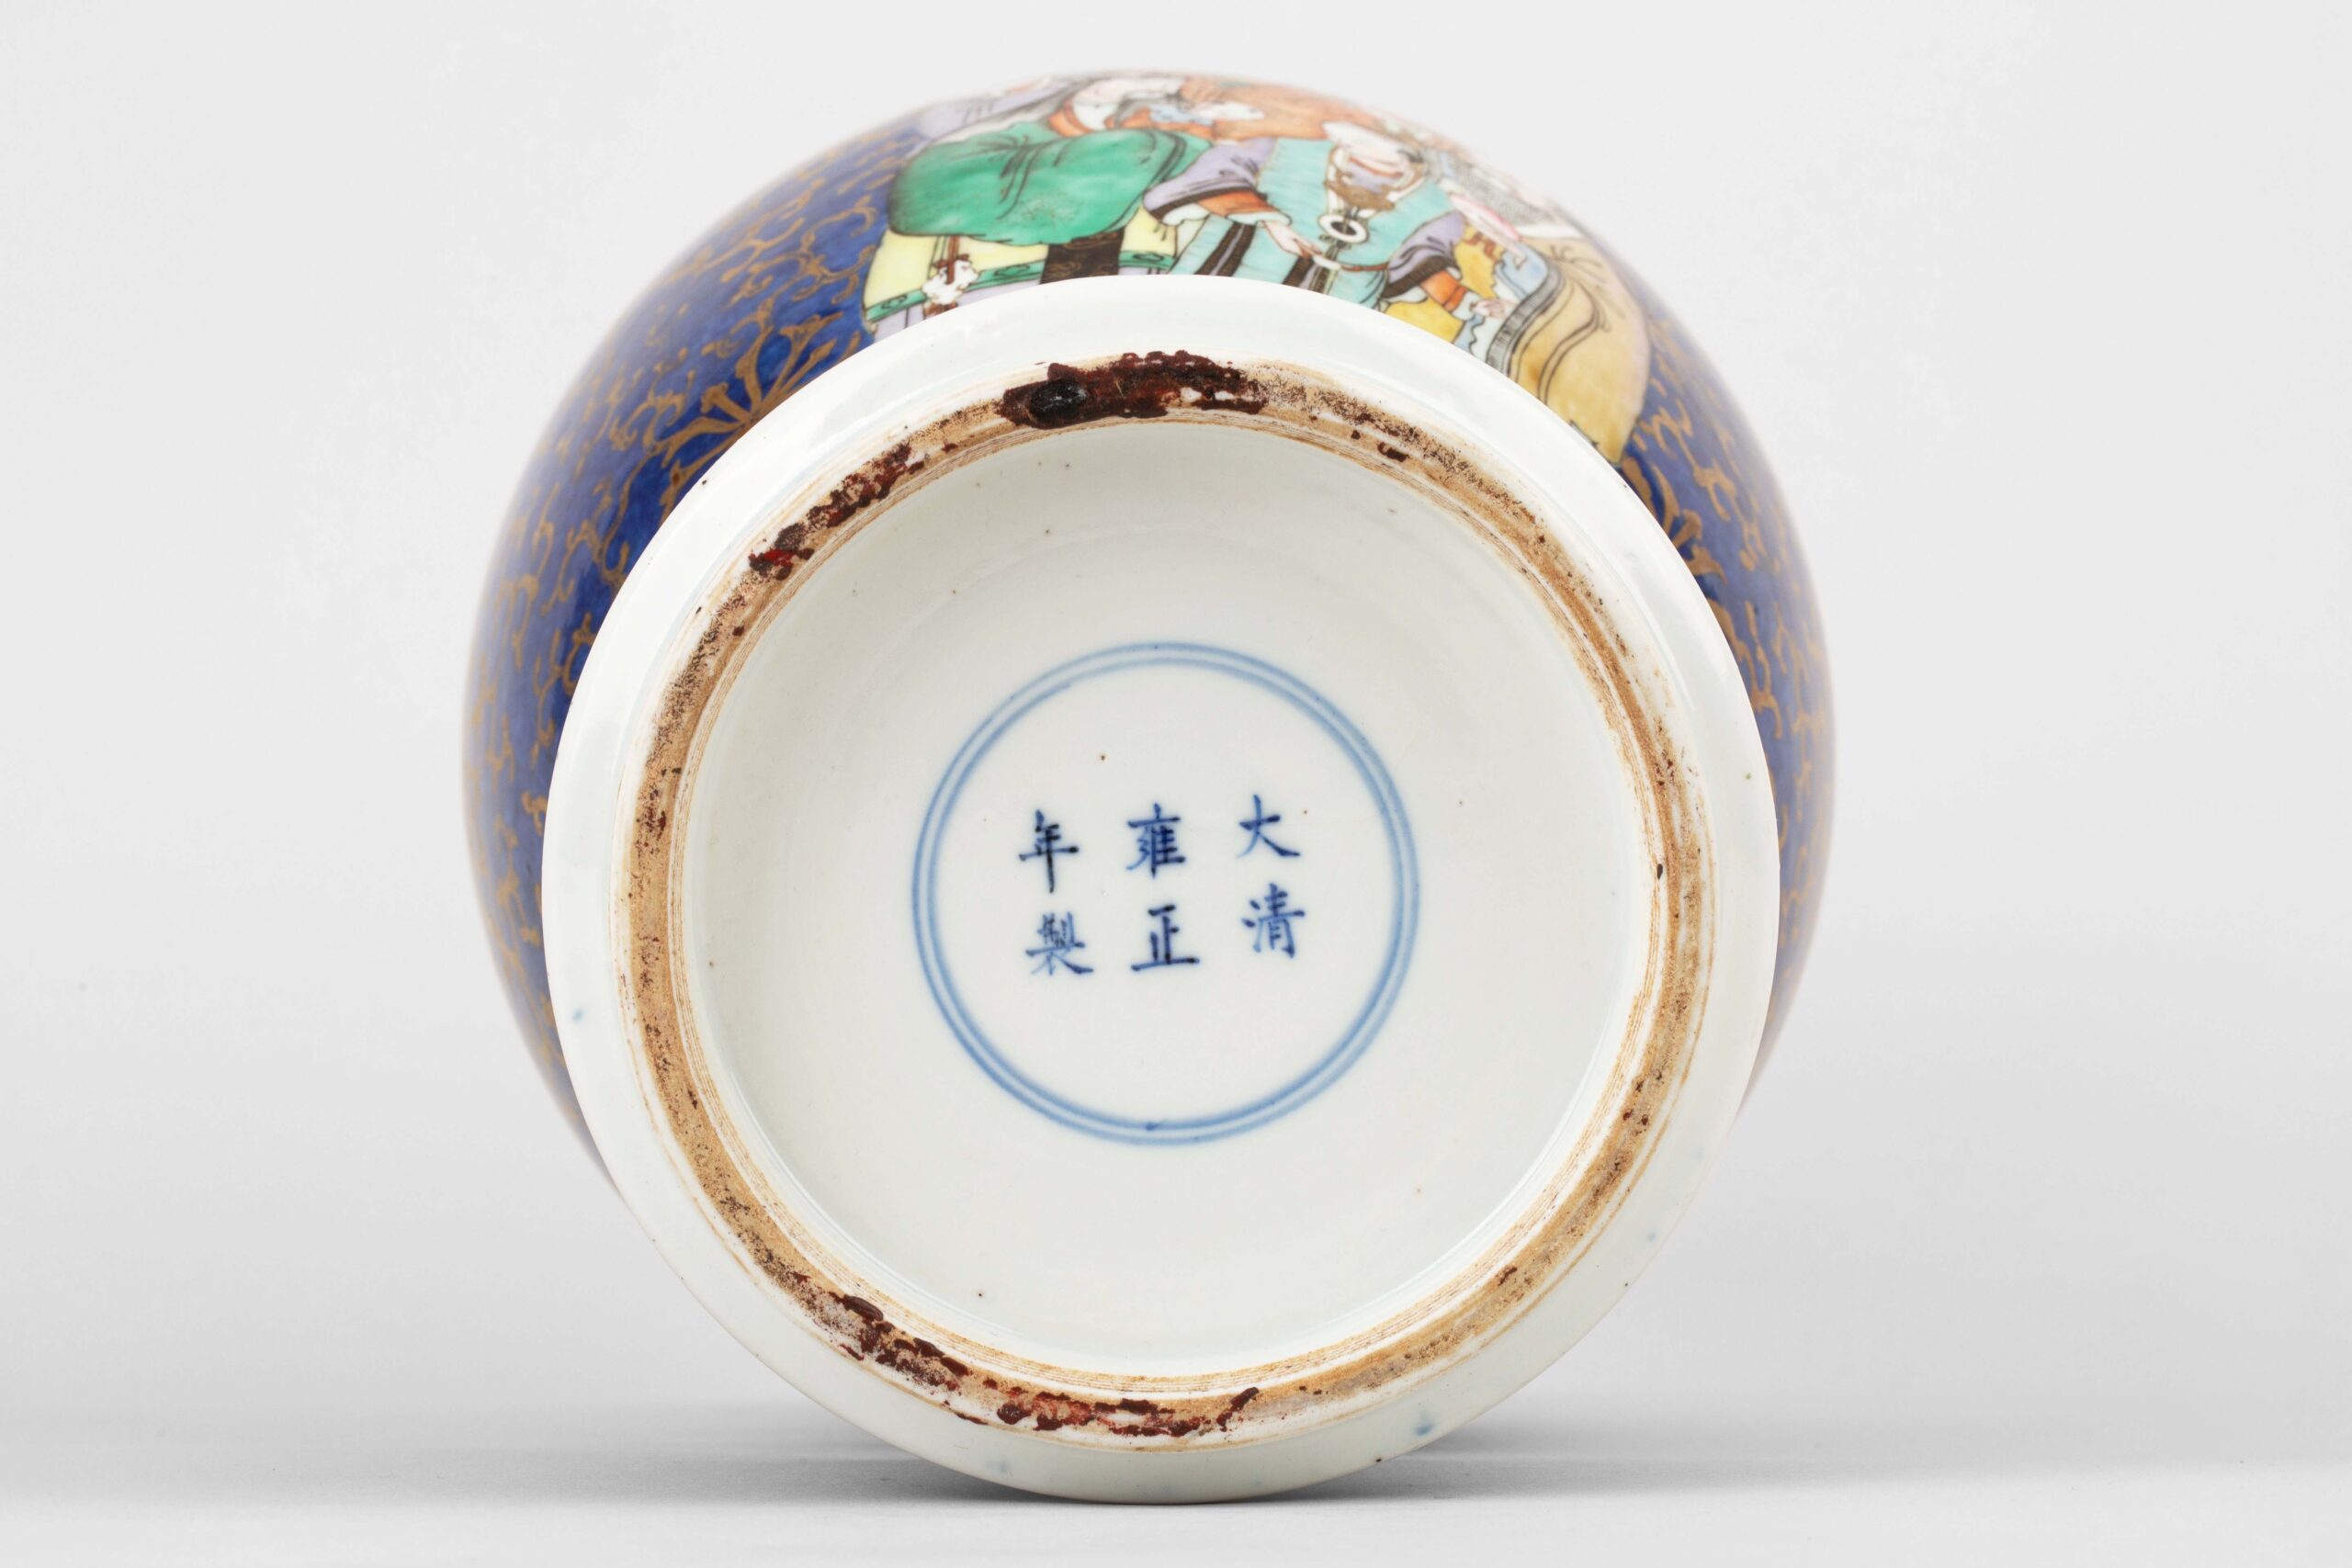 Daqing Yongzheng Year Made mark, Blue-glazed gold-painted Fu Lu 